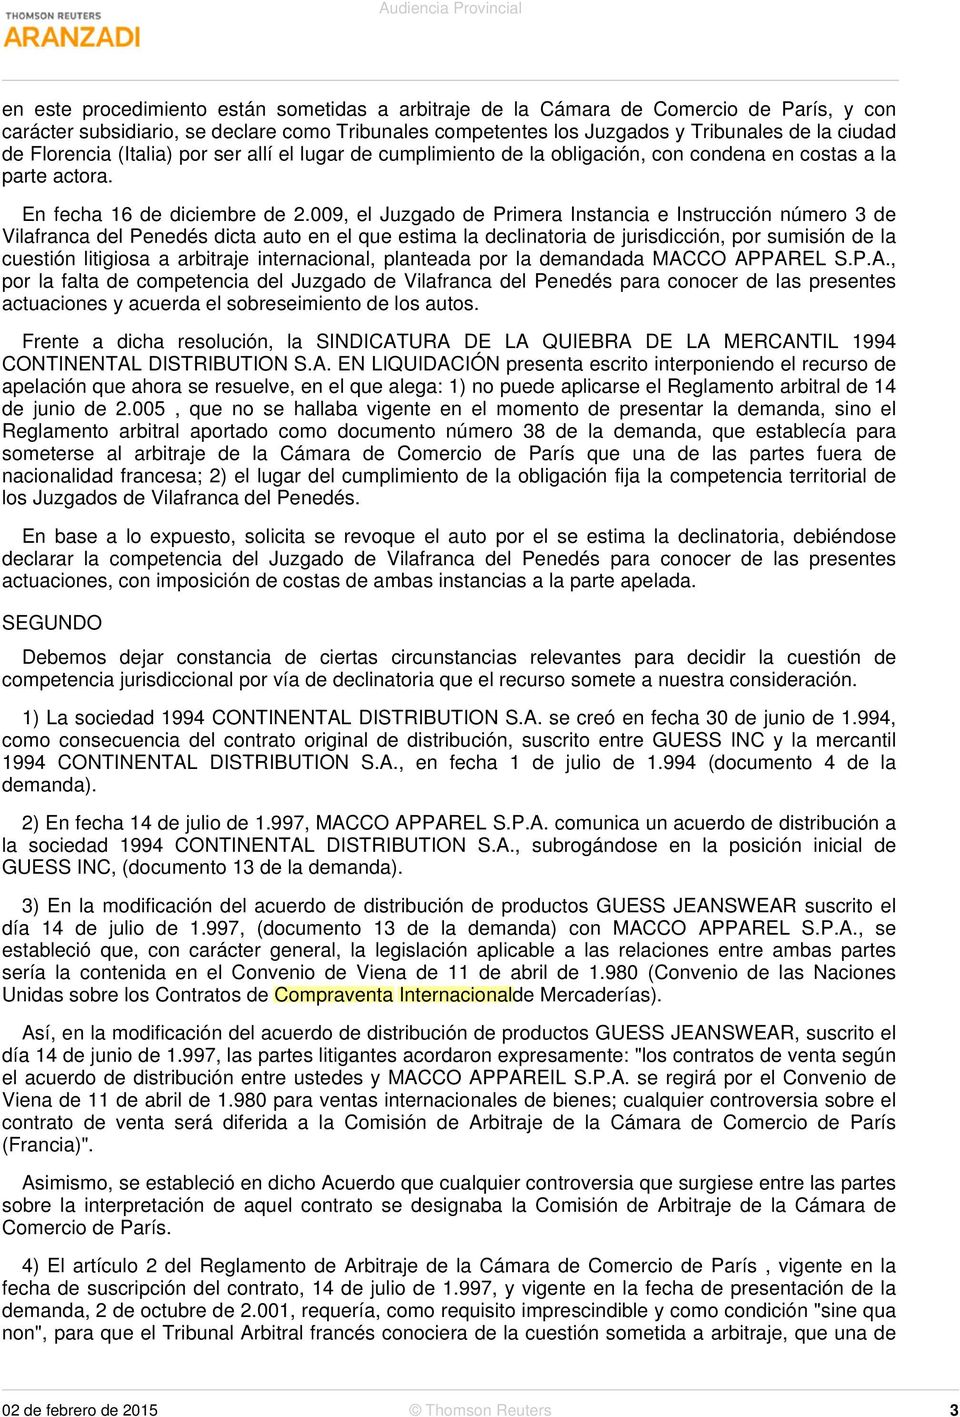 009, el Juzgado de Primera Instancia e Instrucción número 3 de Vilafranca del Penedés dicta auto en el que estima la declinatoria de jurisdicción, por sumisión de la cuestión litigiosa a arbitraje